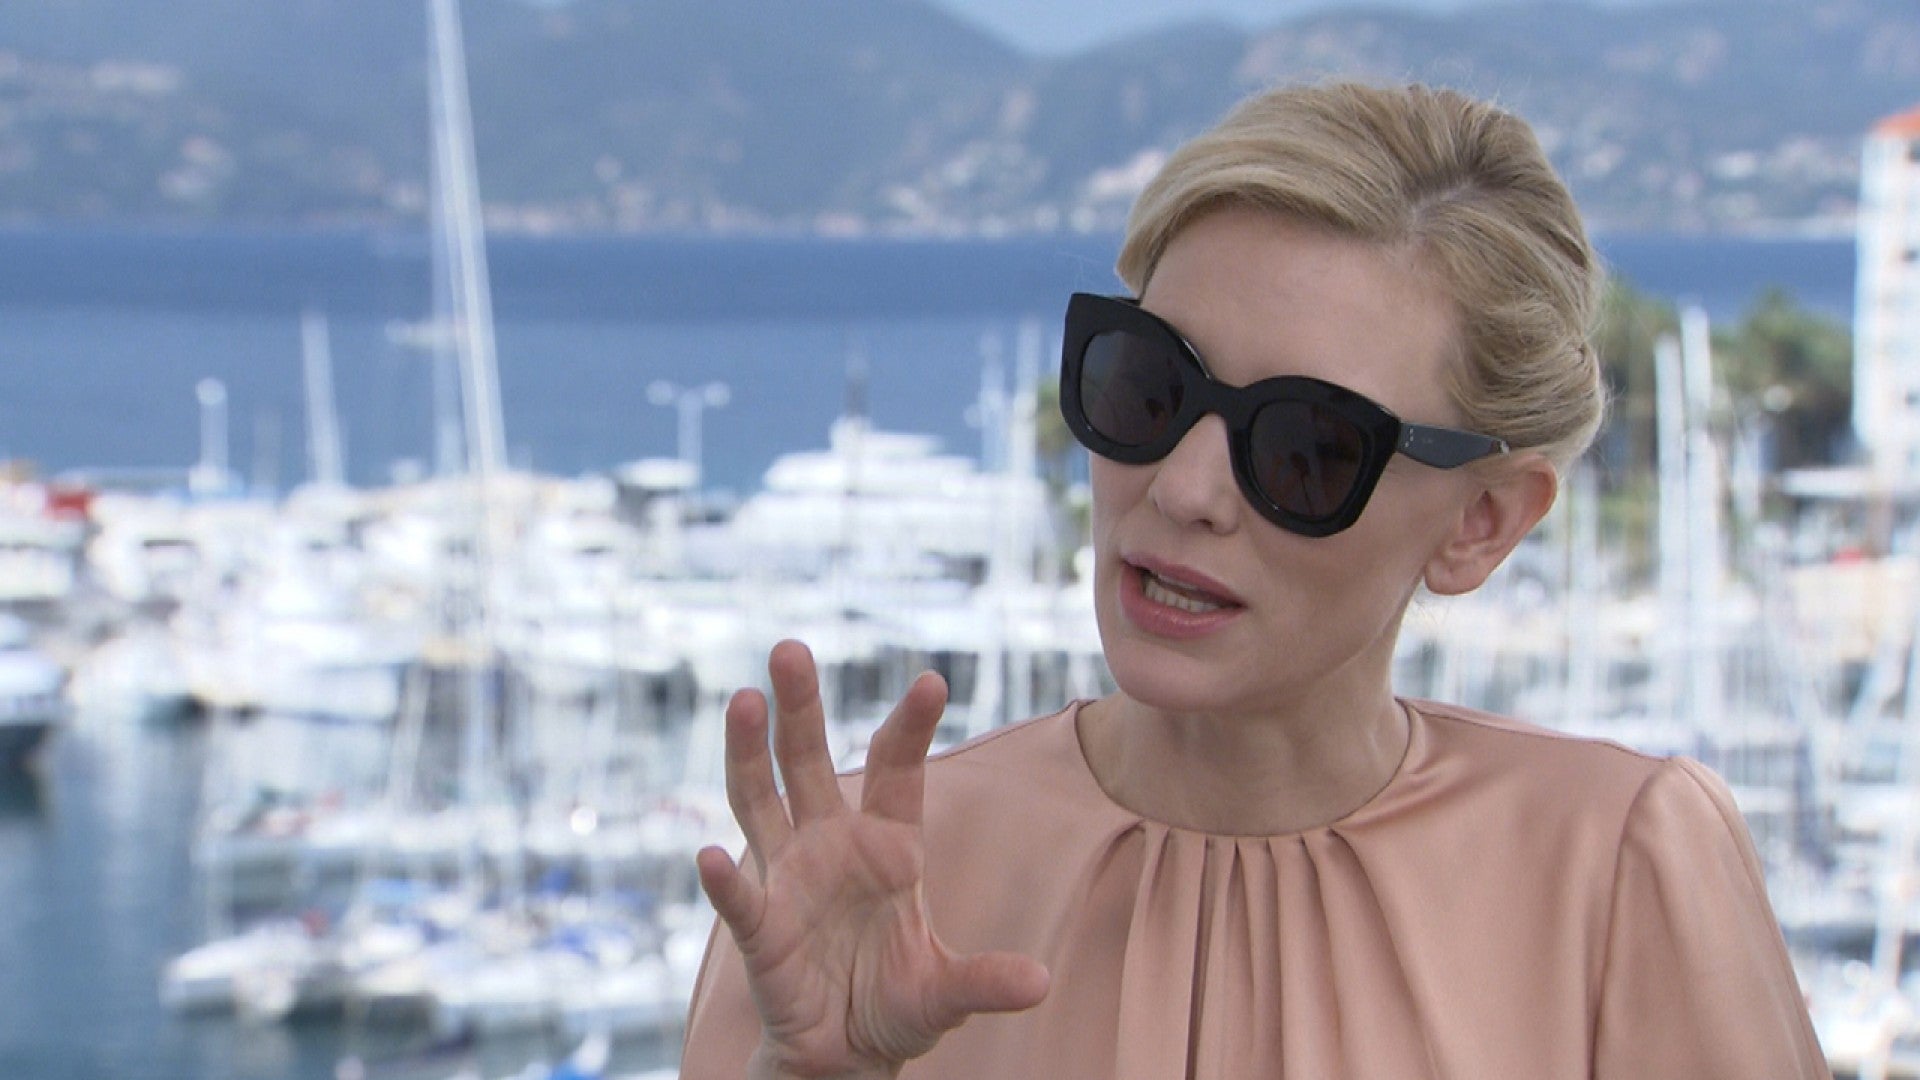 Cate Blanchett denies dating women